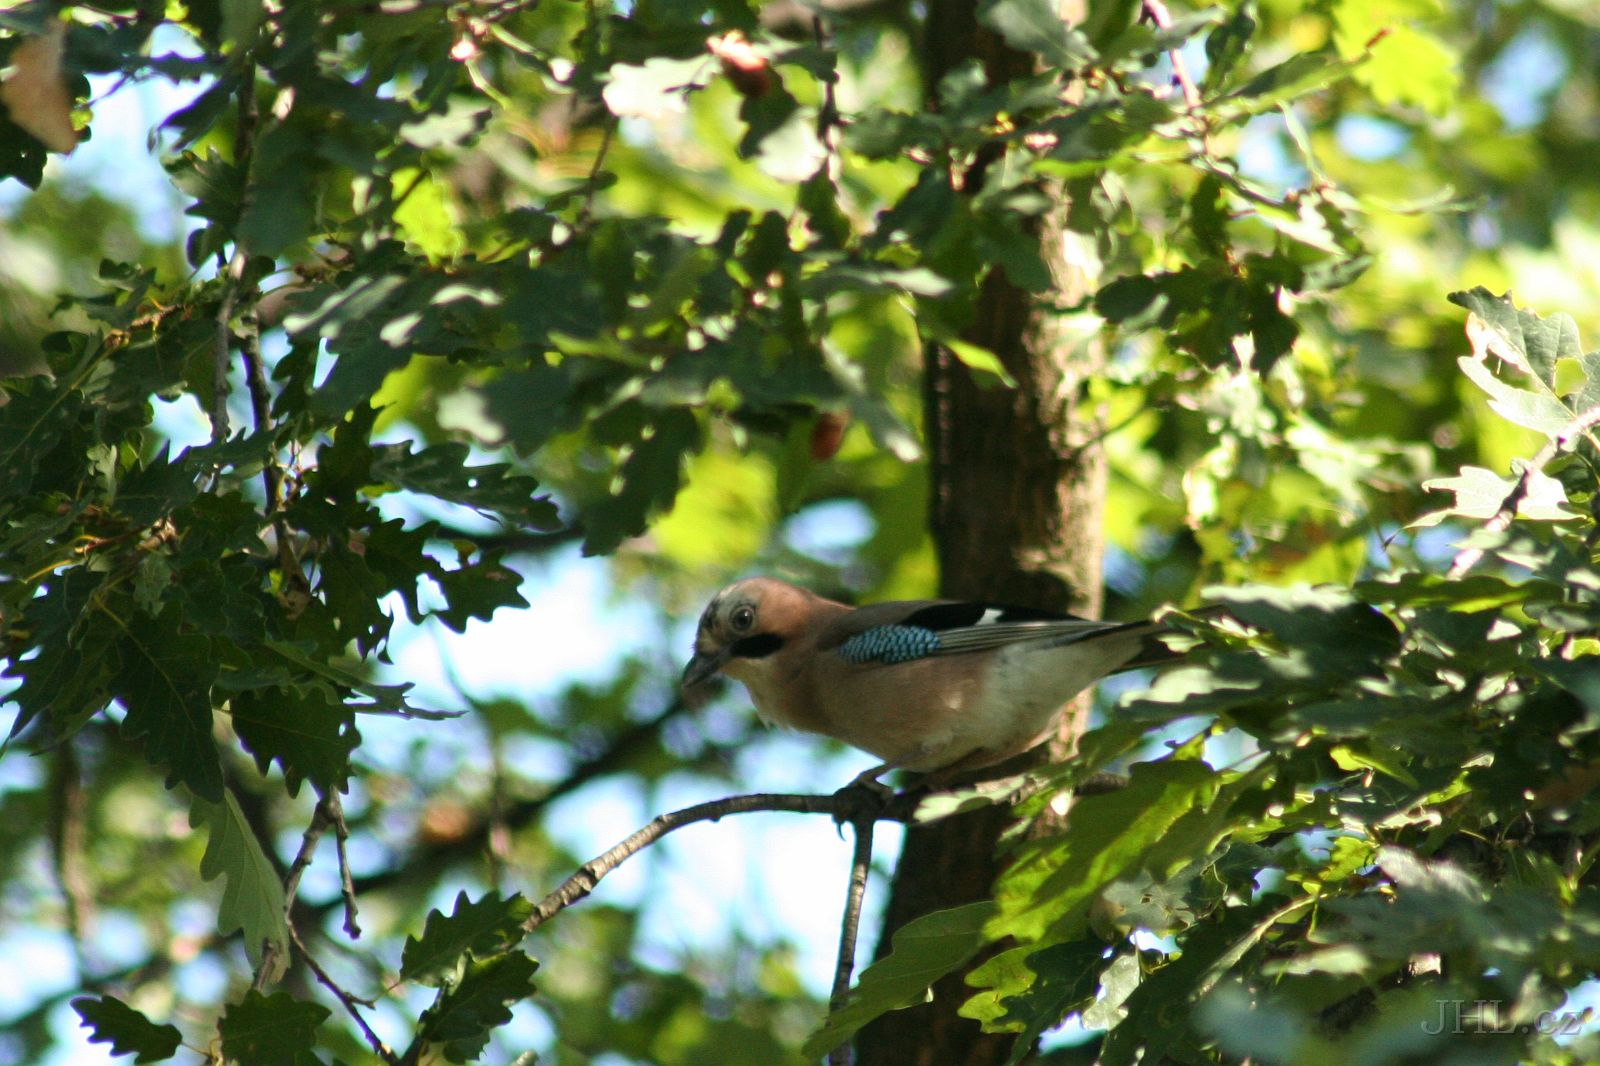 050918c186_u.jpg - Sojka je stromovým ptákem a jednotlivé páry si budují hnízda jen v lese, obyčejně na hustém a vysokém smrku.